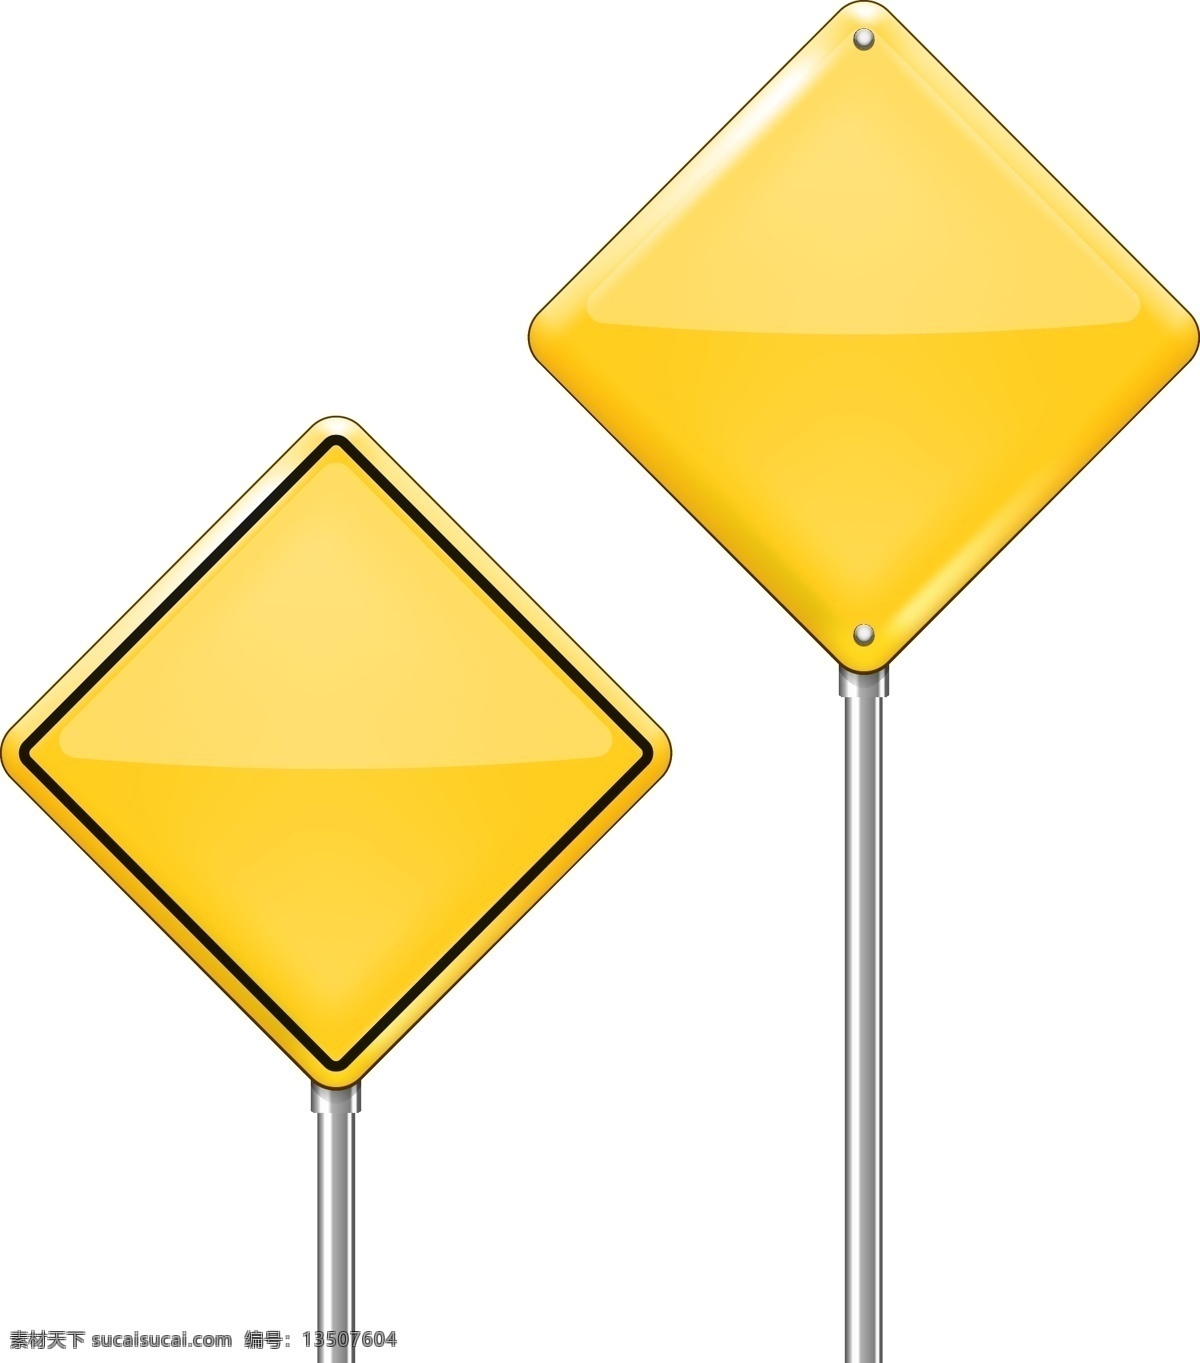 双警示牌包装 按钮 道路 三角 标志 黄 信息 插图 警告 符号 危险 注意 标记 包装 感叹 风险 感叹号 白色